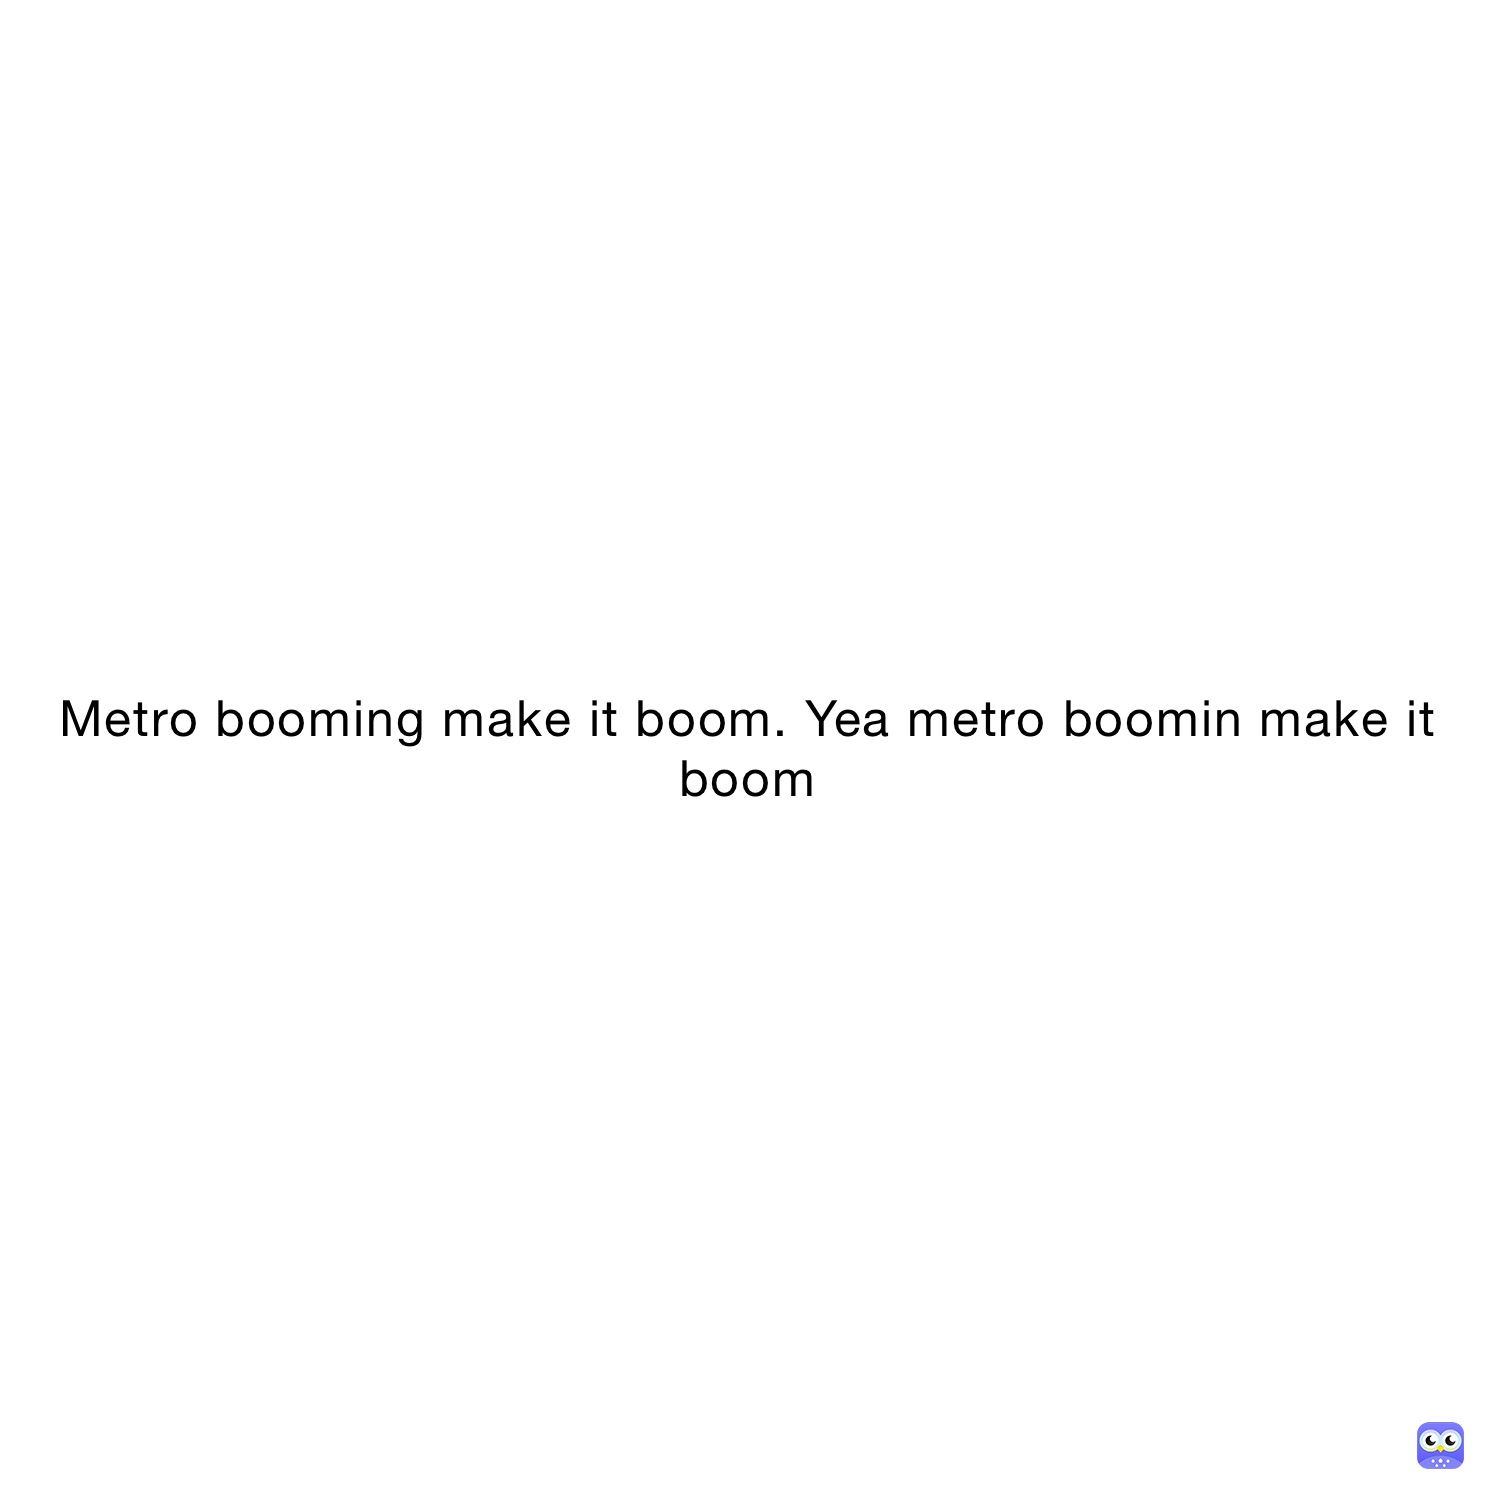 Metro booming make it boom. Yea metro boomin make it boom